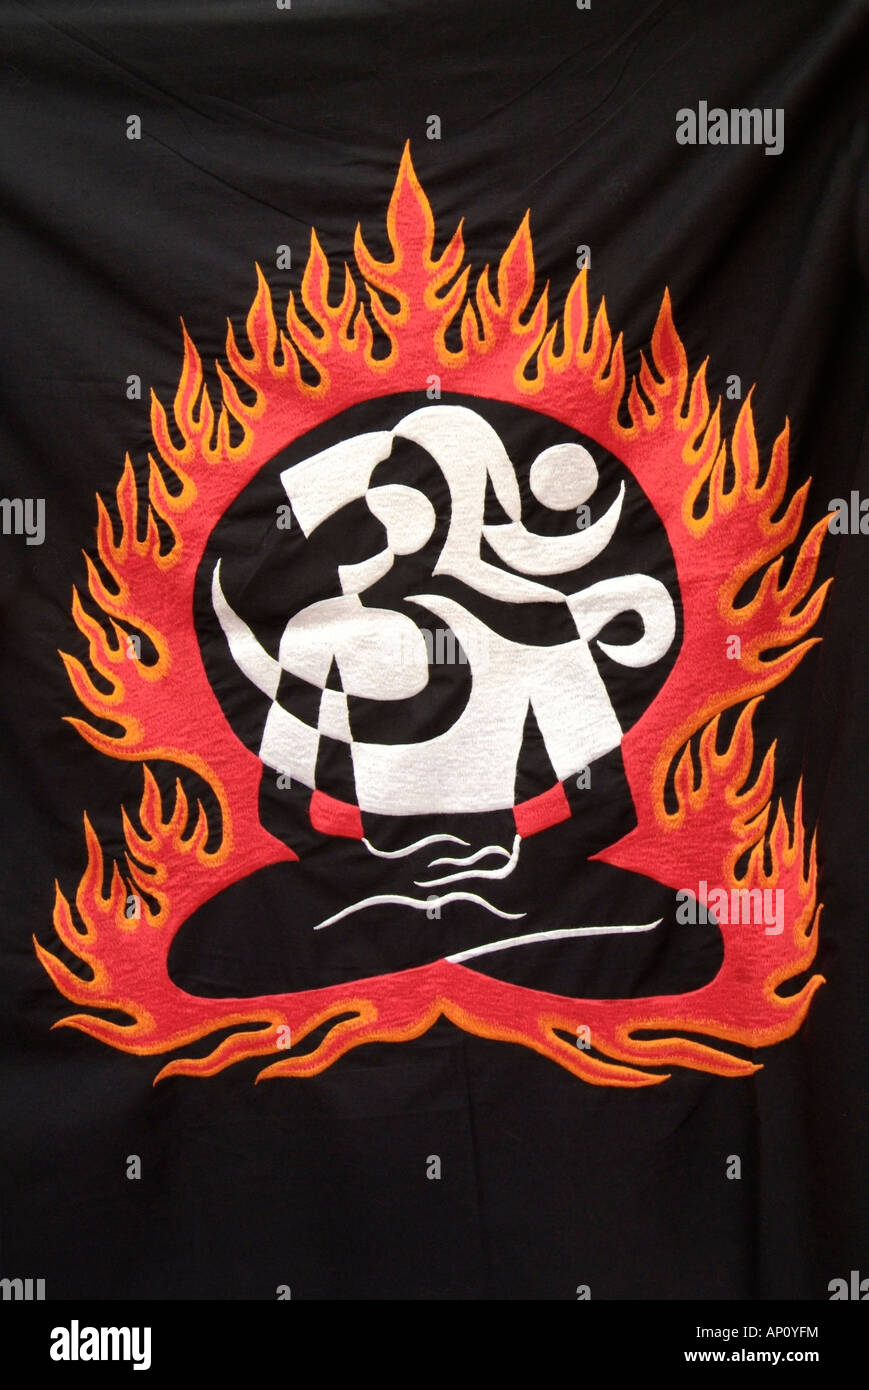 Tibet tibetische Nepal Nepal Indien indischer Stoff Tuch Material Appliqué  Flamme Symbol Feuer sitzenden Yoga Haltung Lotus meditieren bu  Stockfotografie - Alamy